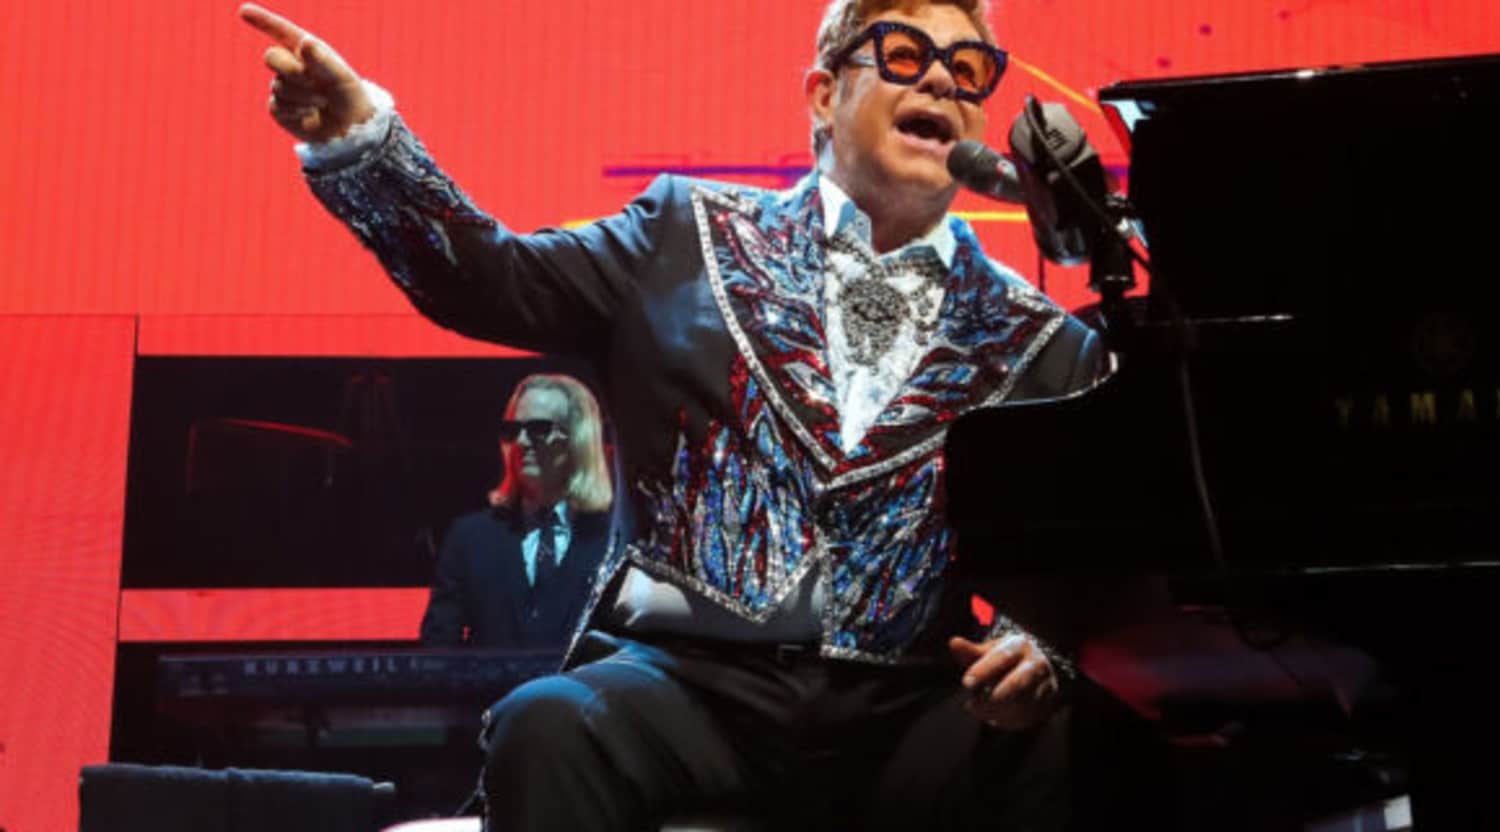 Wells Fargo Seating Chart For Elton John